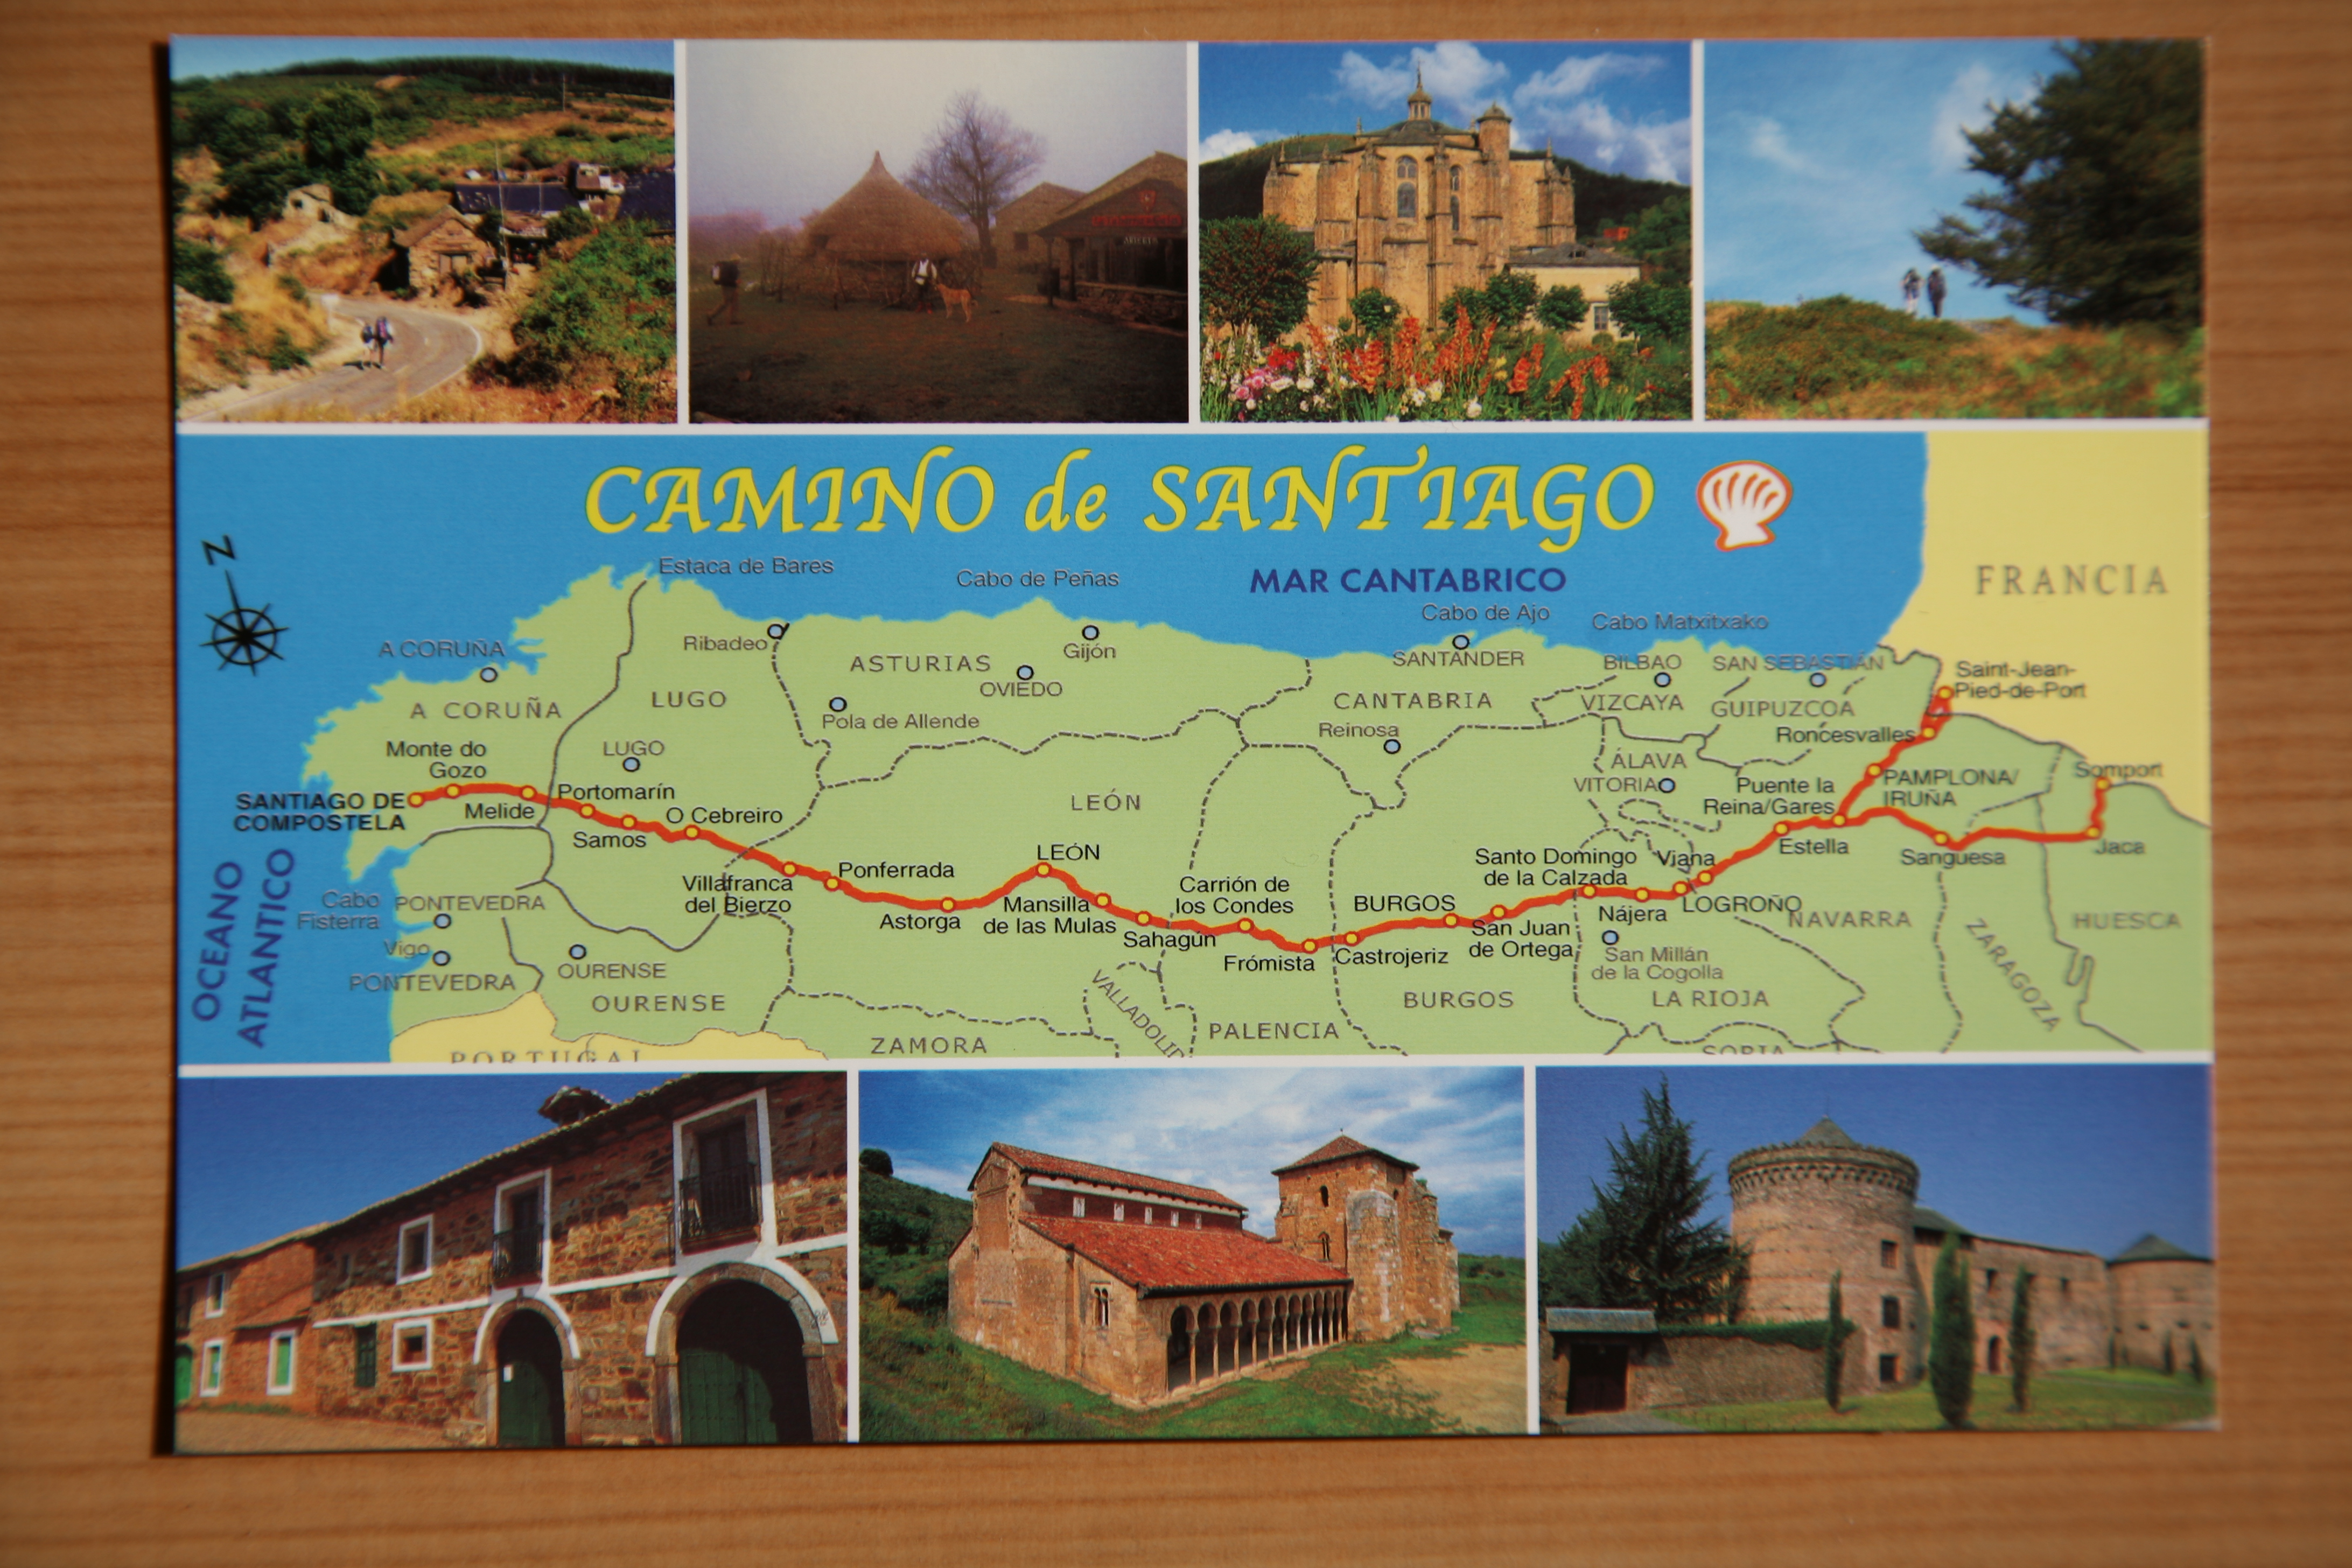 Caminoen kaldes ruten der starter i Pyrenæerne og går vestpå til Santiago de Compostela. Vejen løber under Mælkevejen